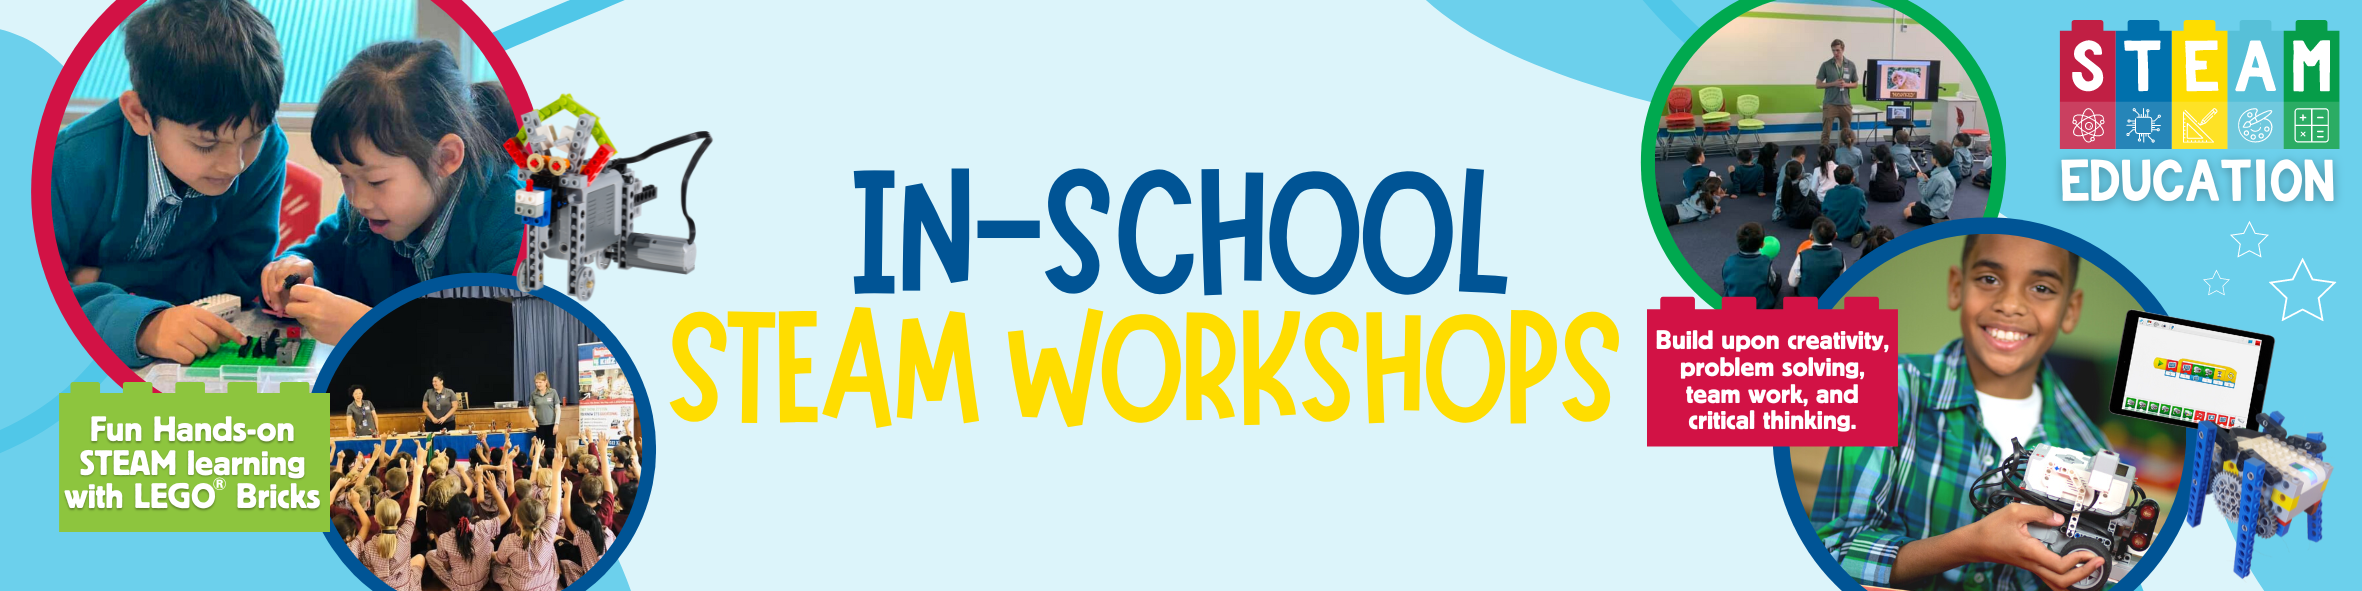 In-School STEAM workshops